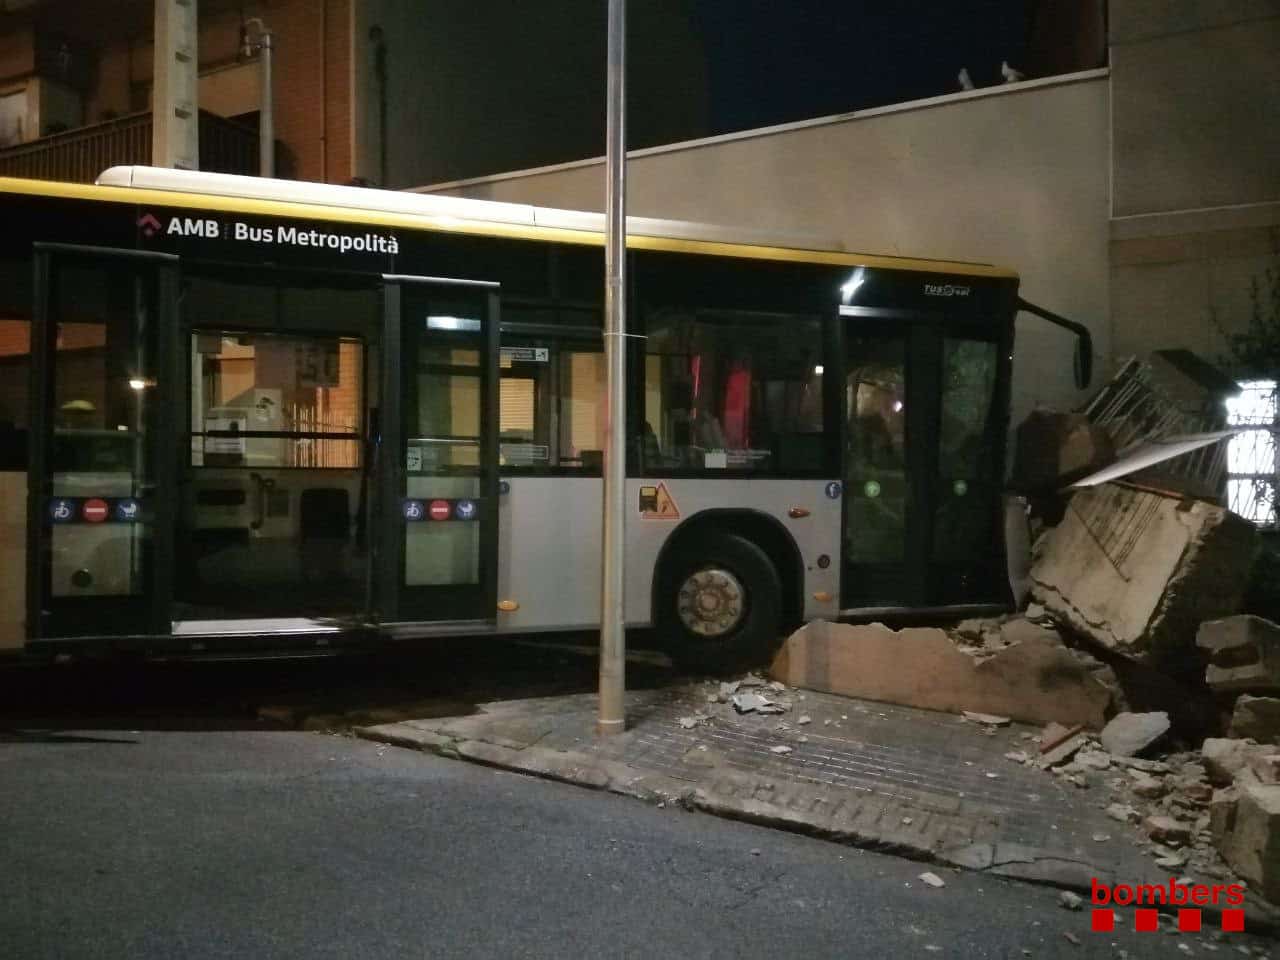 El autobús tras el accidente